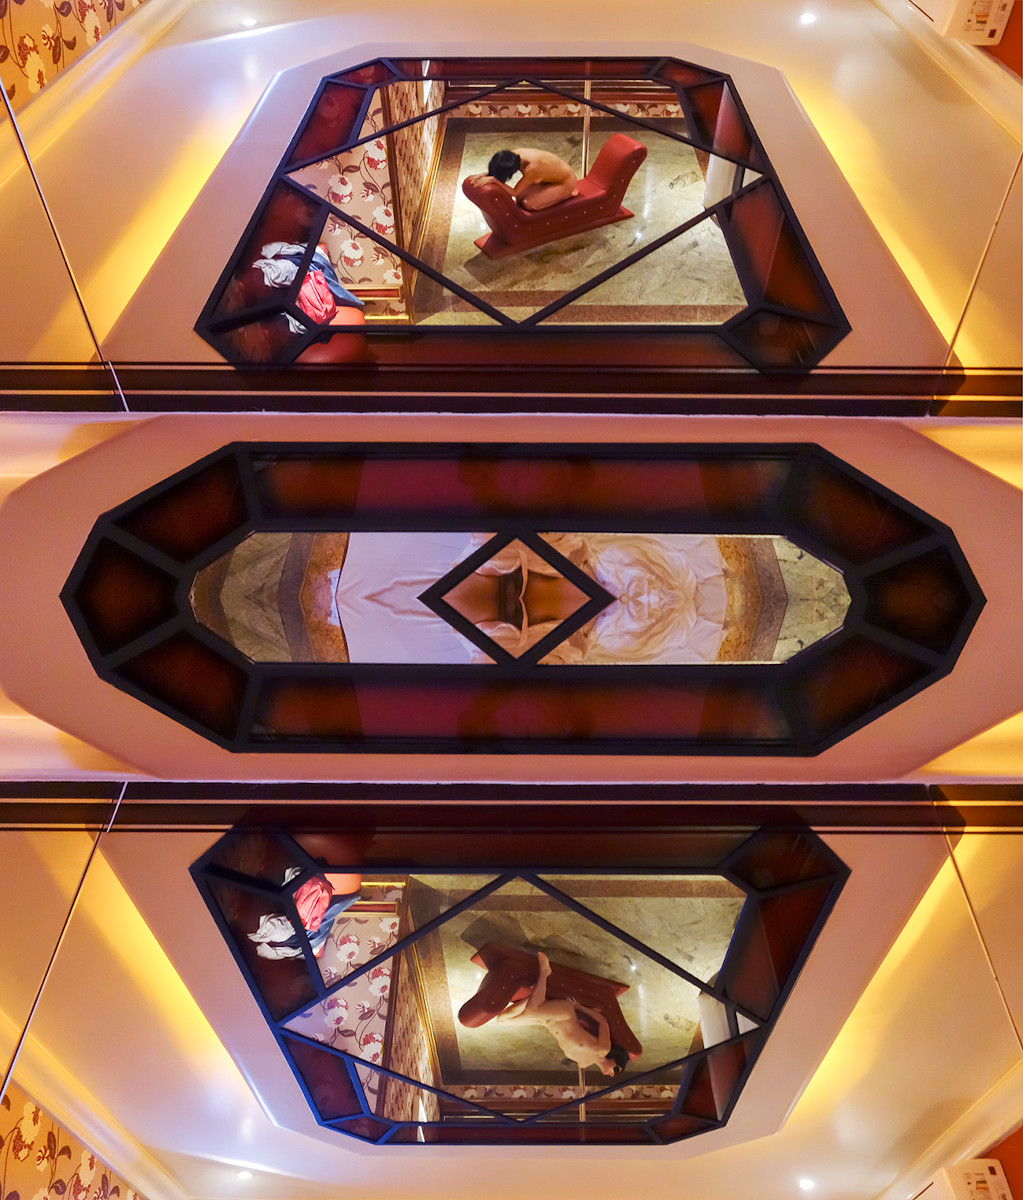 摩妮卡 Barki, 奥布拉镜子 (2014) (1 的 5 项目), 欲望系列 - 秘密的体系结构, 照片印在 308 克哈内姆勒棉纸上, 尺寸: 117 x 100 厘米. 照片: 泄露.